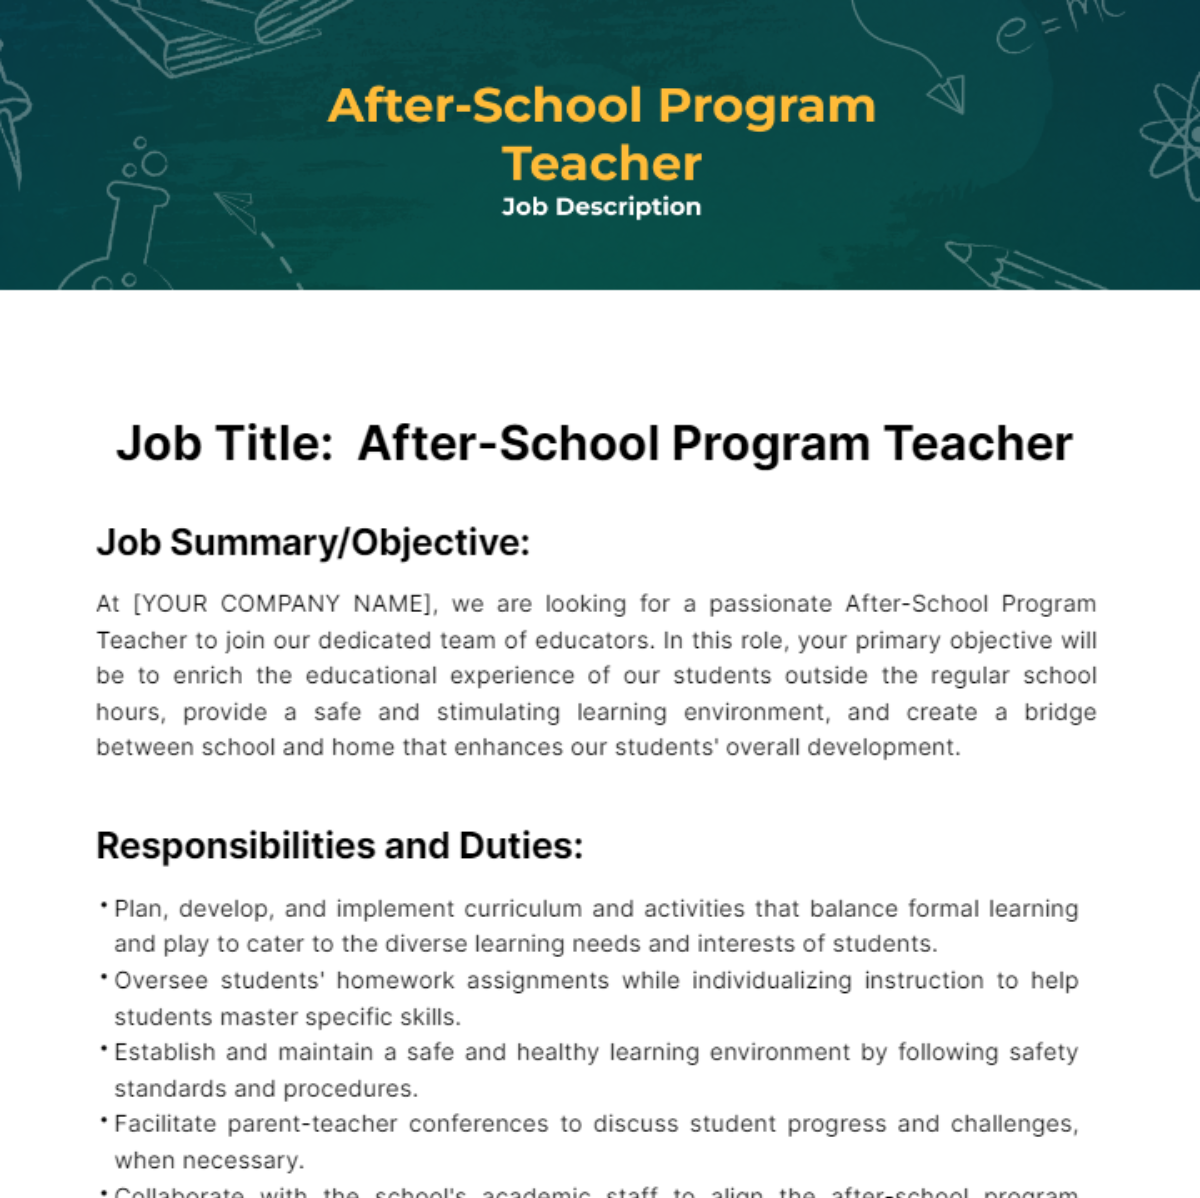 Free After-School Program Teacher Job Description Template